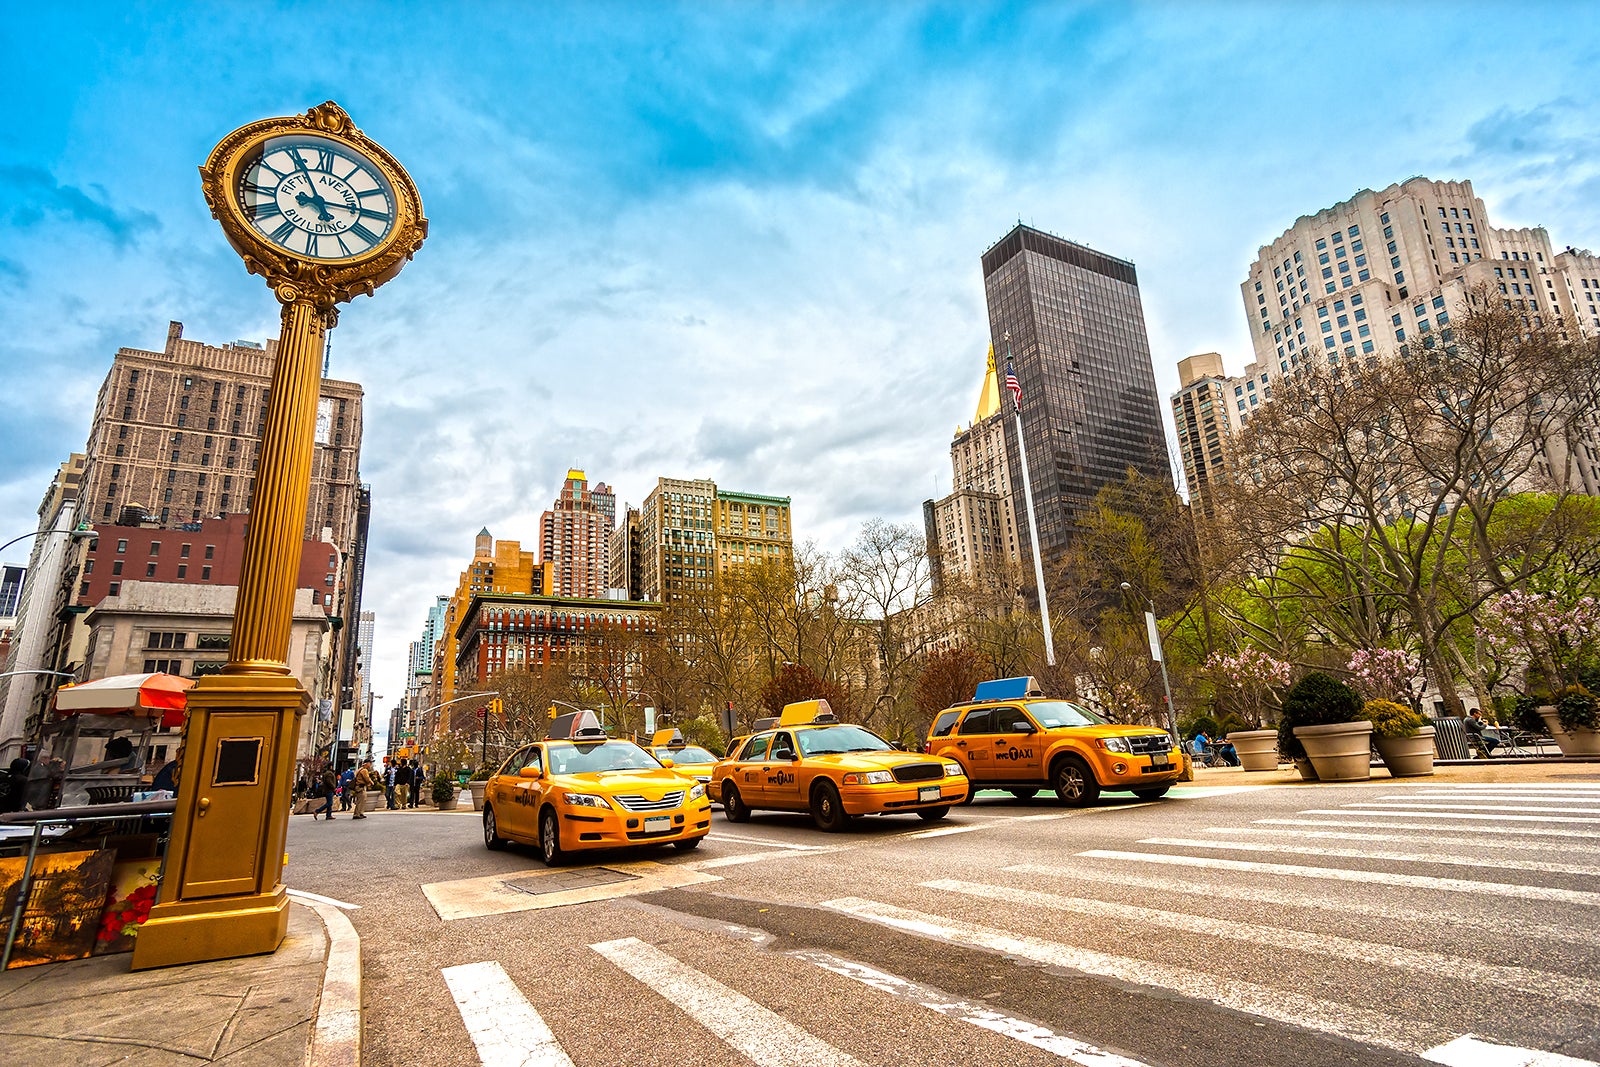 Στη Νέα Υόρκη ο ακριβότερος εμπορικός δρόμος στον κόσμο